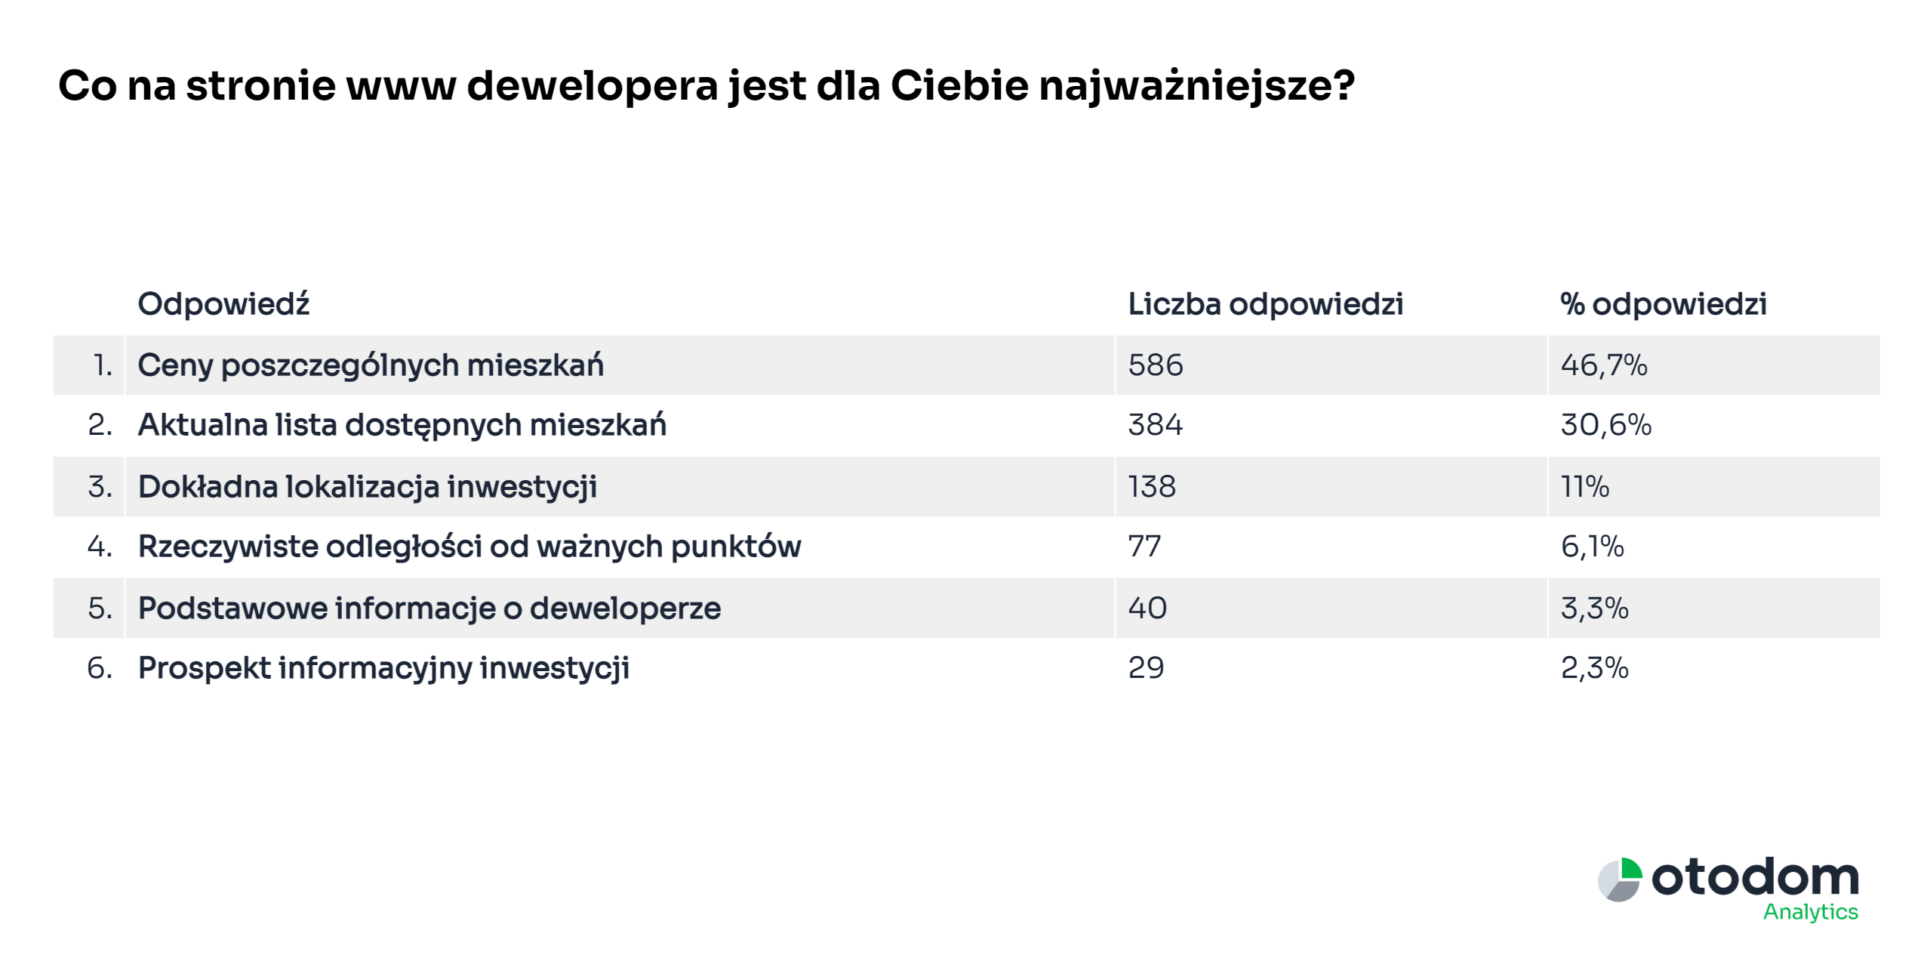 Ankieta obido - co na stronie www dewelopera jest najważniejsze